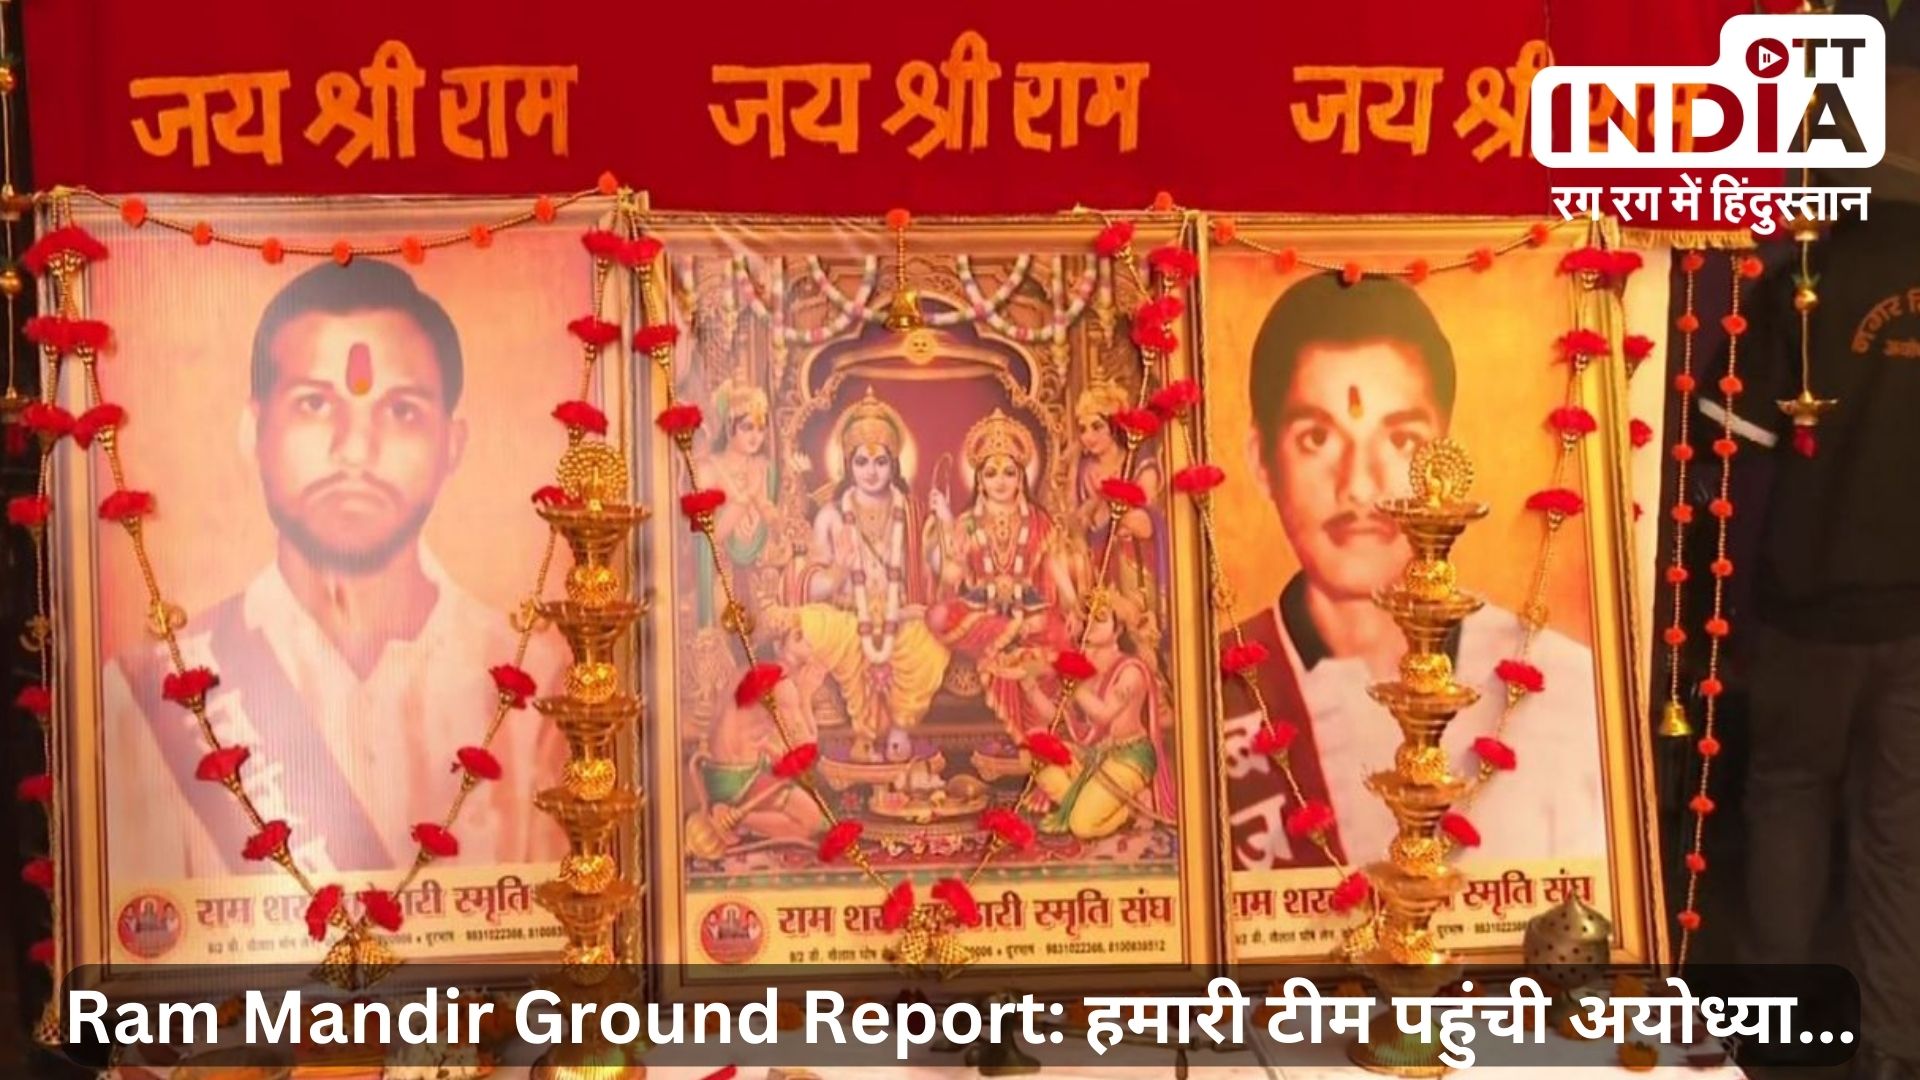 Ram Mandir Ground Report: ओटीटी की टीम पहुंची अयोध्या के शरद – राम कोठरी स्मृति संघ, कोठारी बंधुओं की बहन आज पहुंचेंगी अयोध्या